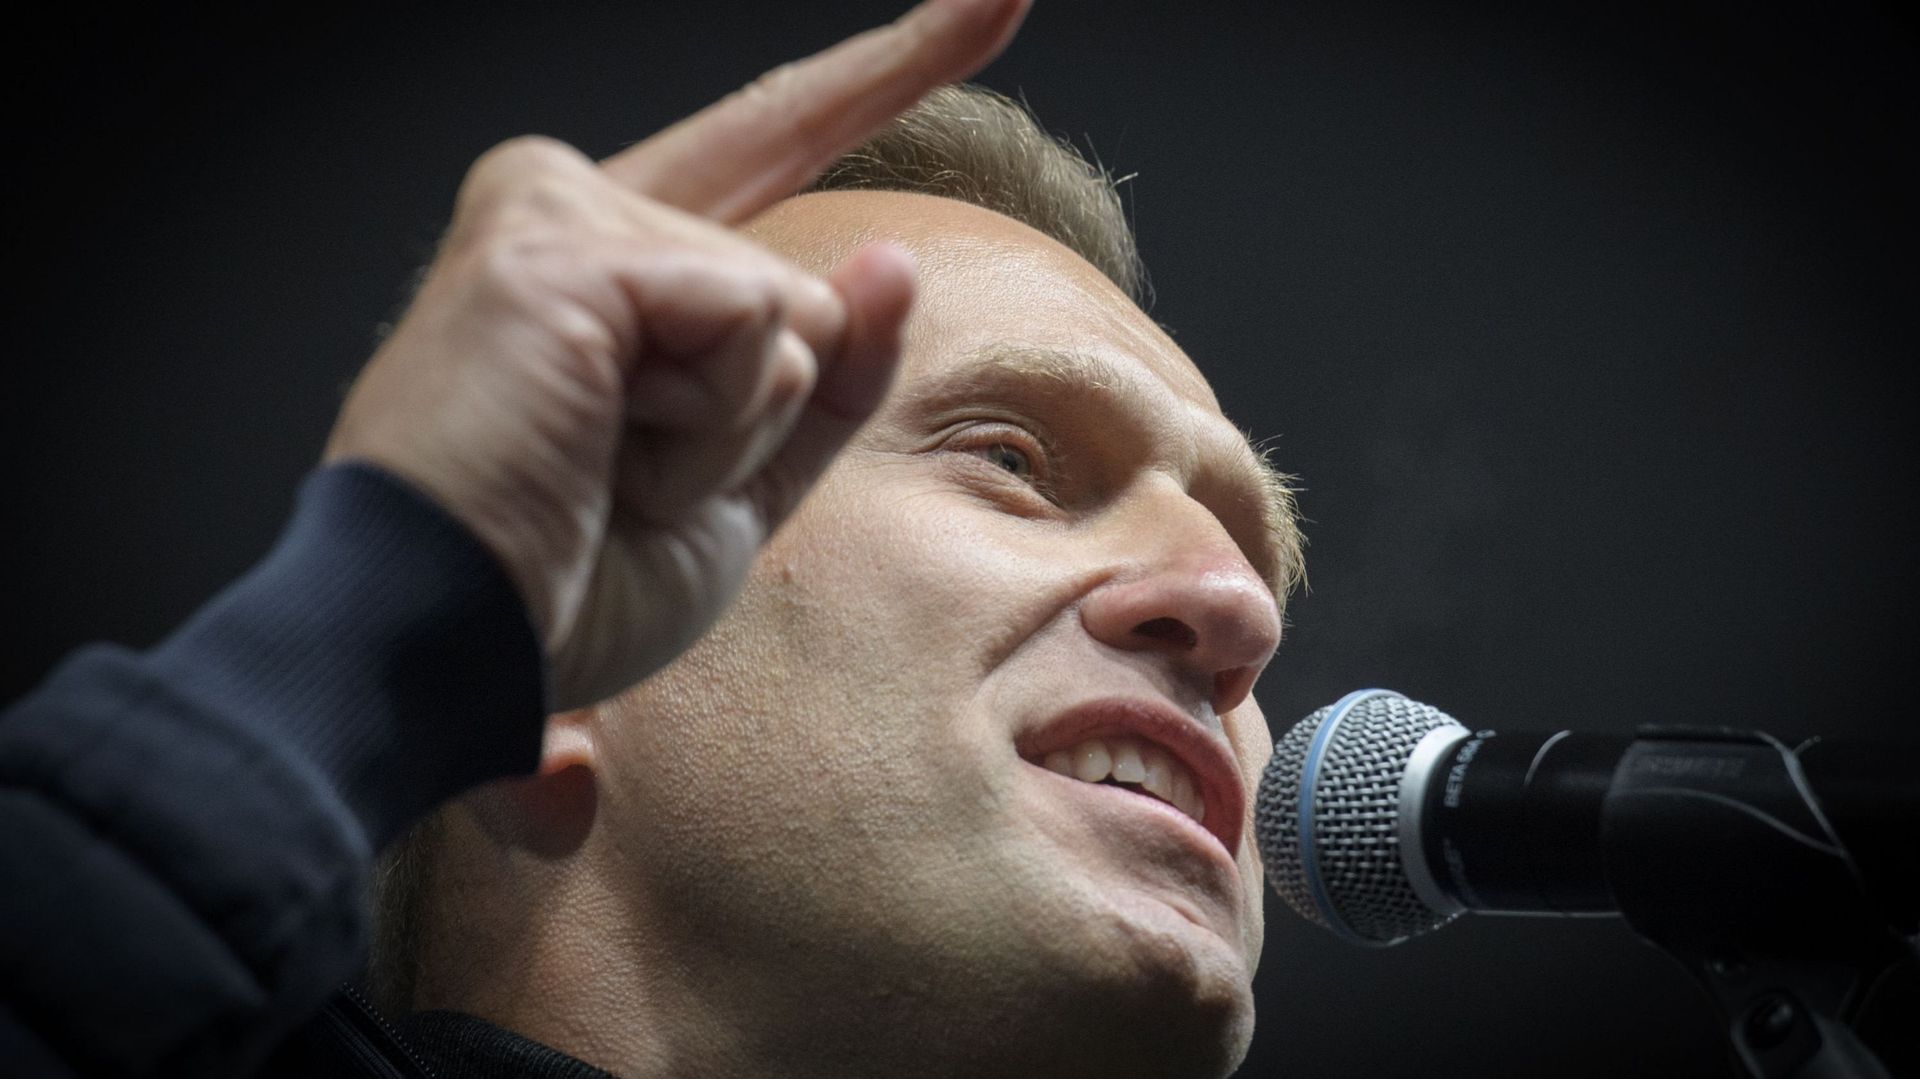 L’opposant russe Alexeï Navalny a été empoisonné au Novichok, selon le gouvernement allemand